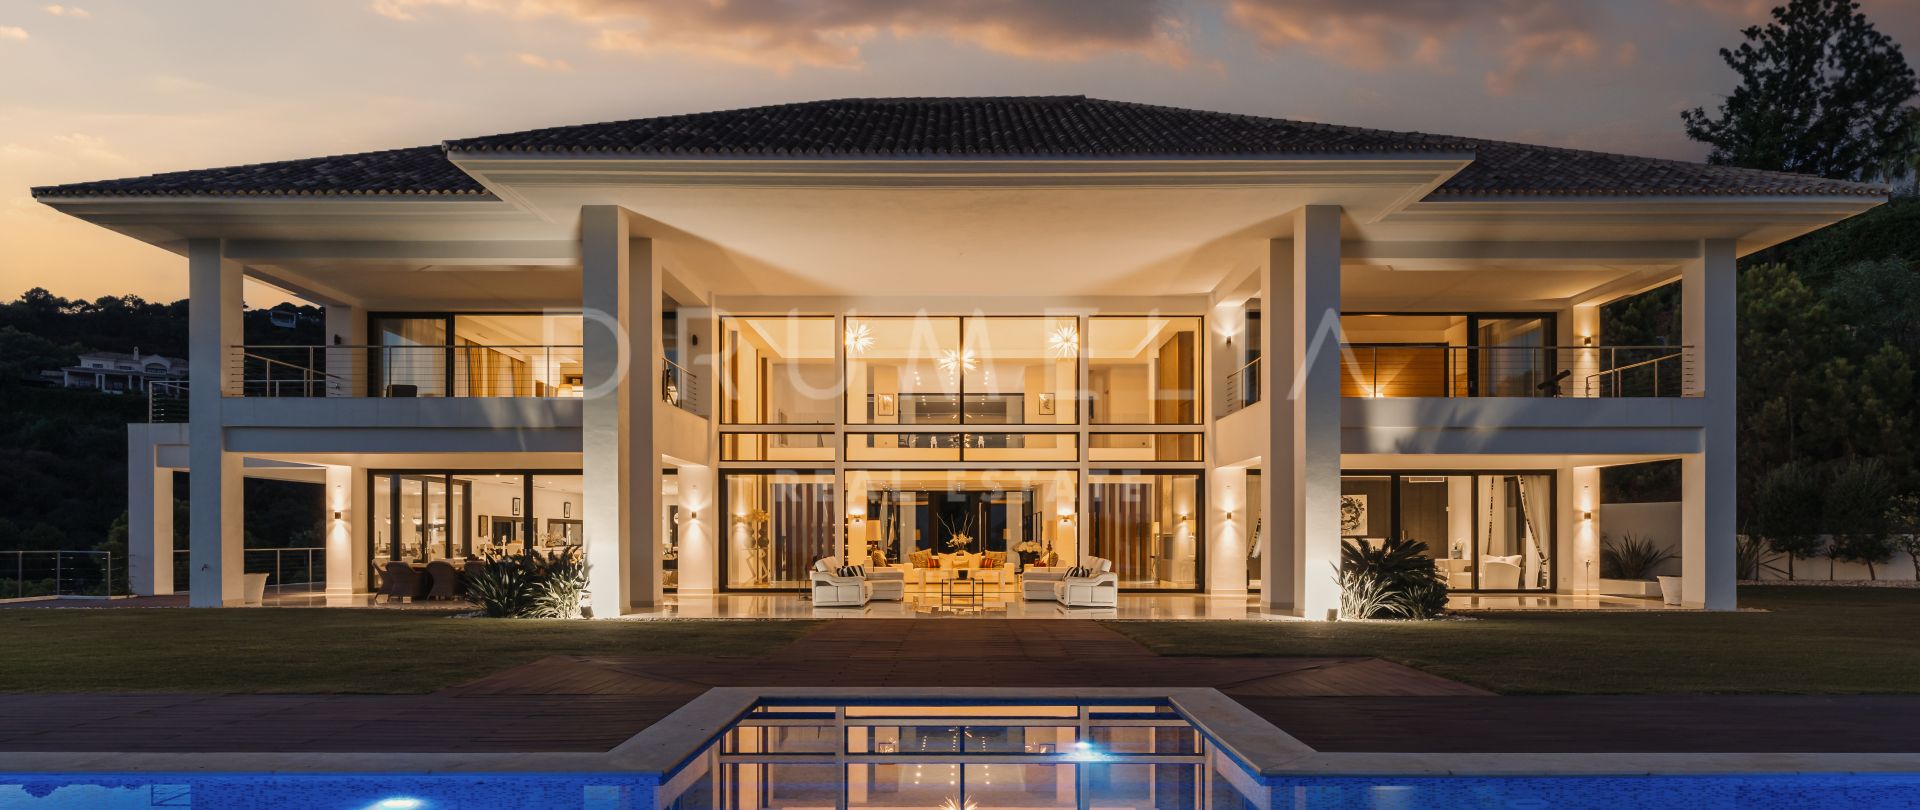 Villa Shiro - Werkelijk adembenemend modern huis van hoge kwaliteit in La Zagaleta, Benahavis, te koop